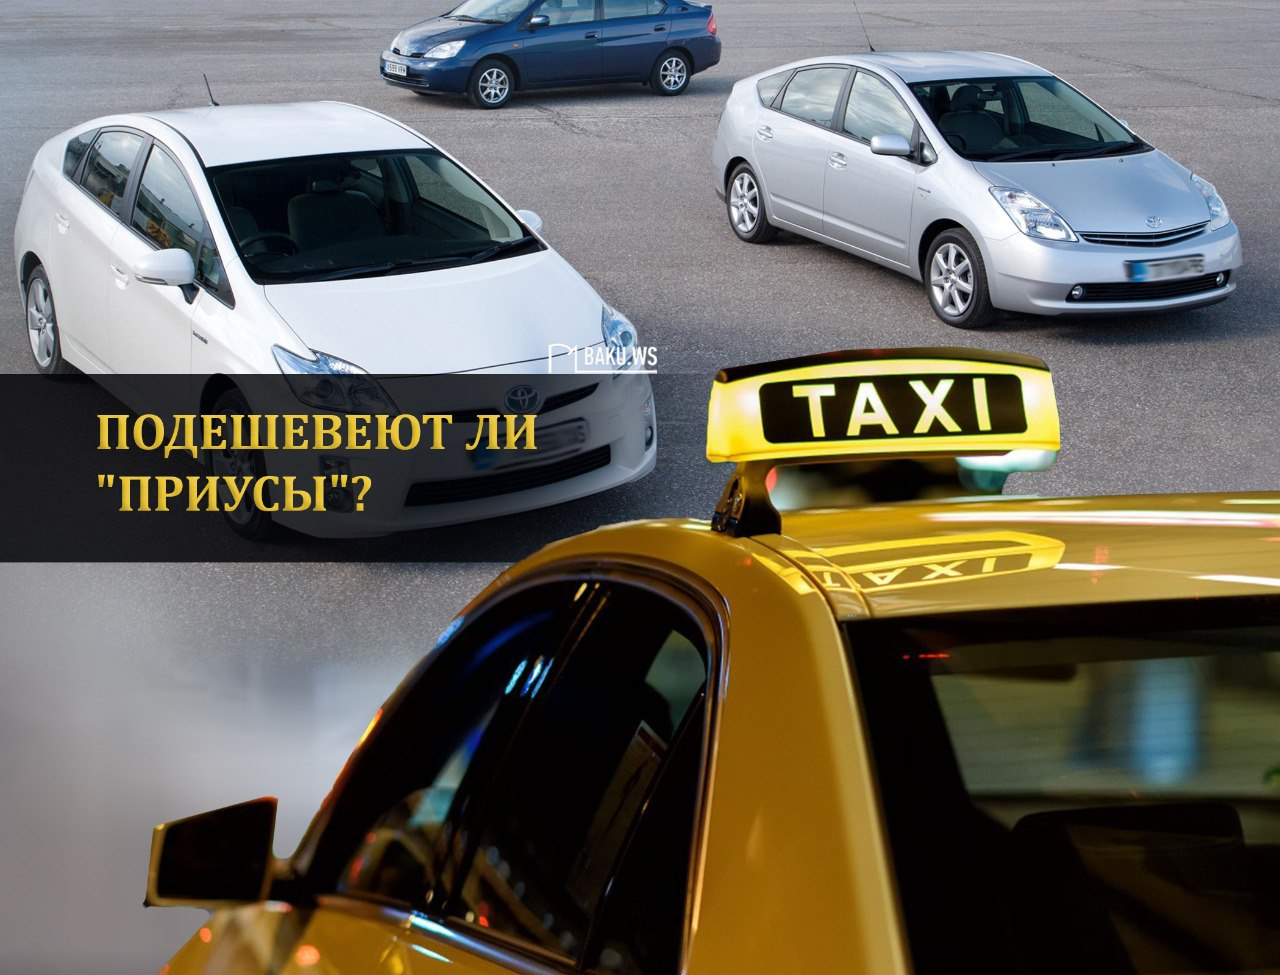 Подешевеют ли "Приусы" после нового решения о такси?